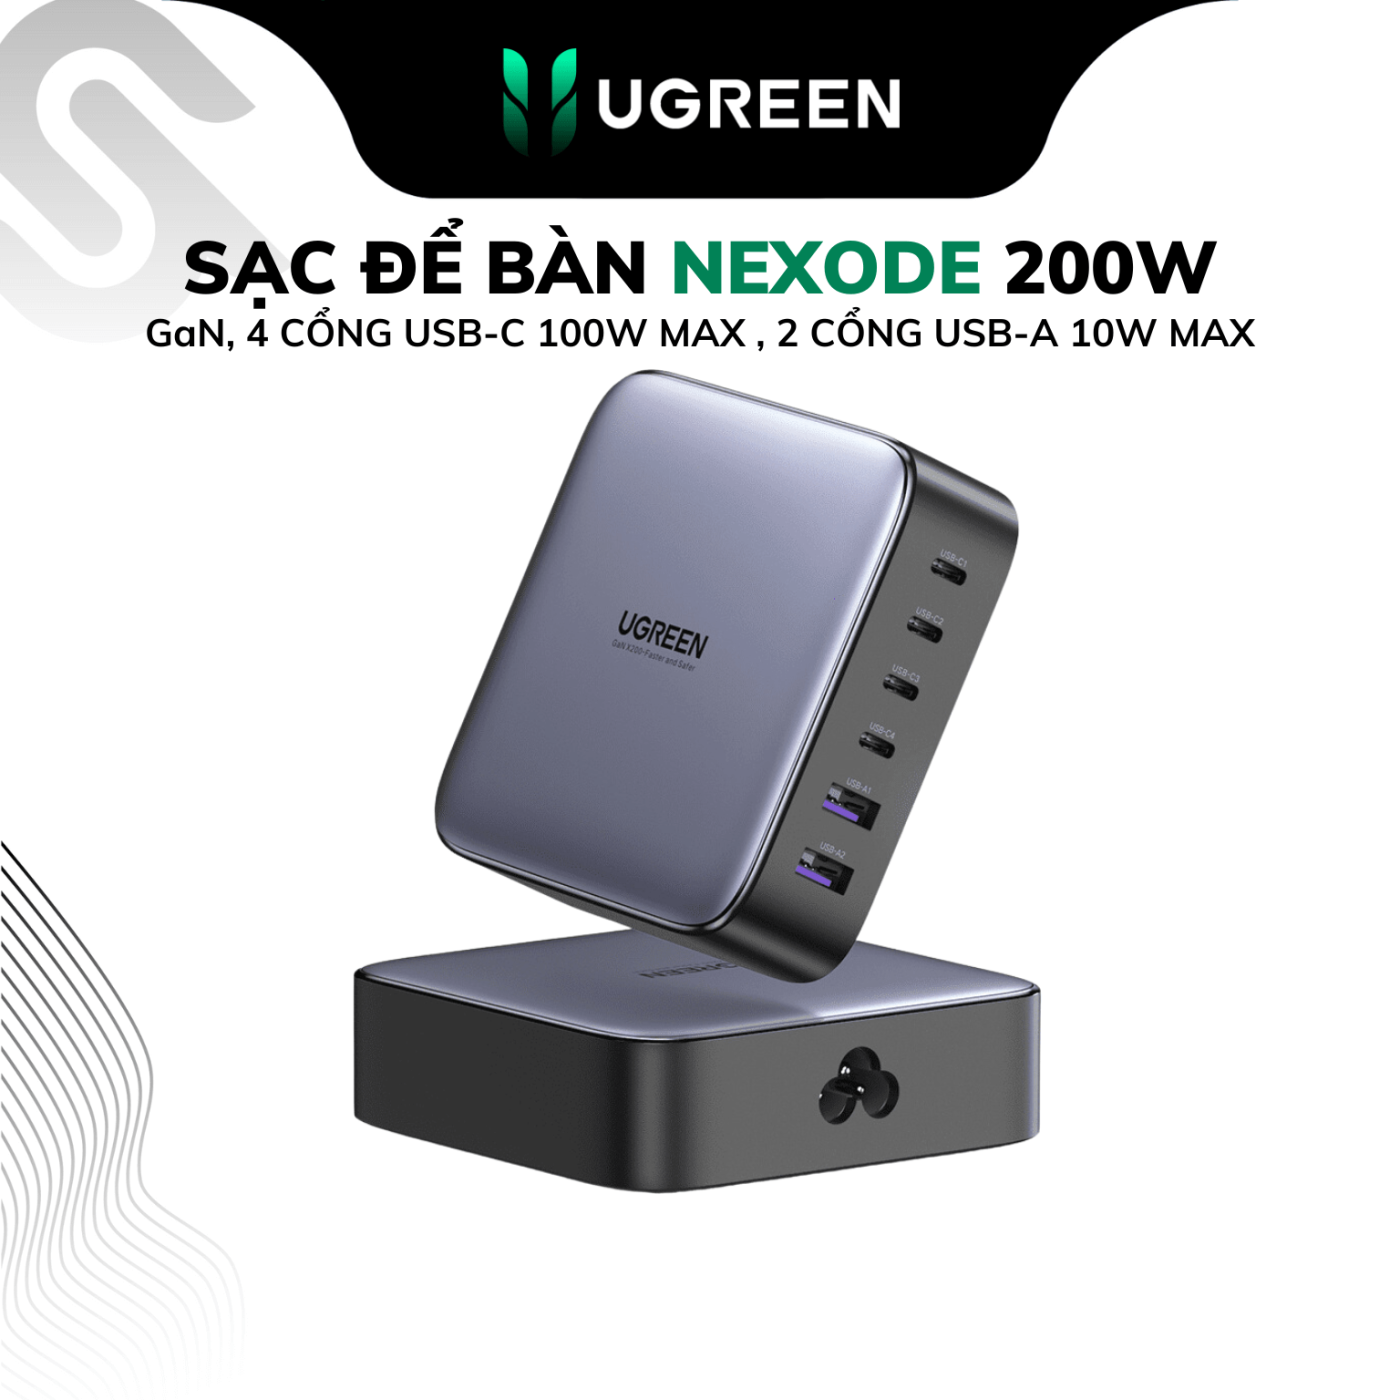 Bộ sạc nhanh để bàn UGREEN 200W Nexode GaN - 6 cổng sạc USB-C/USB-A